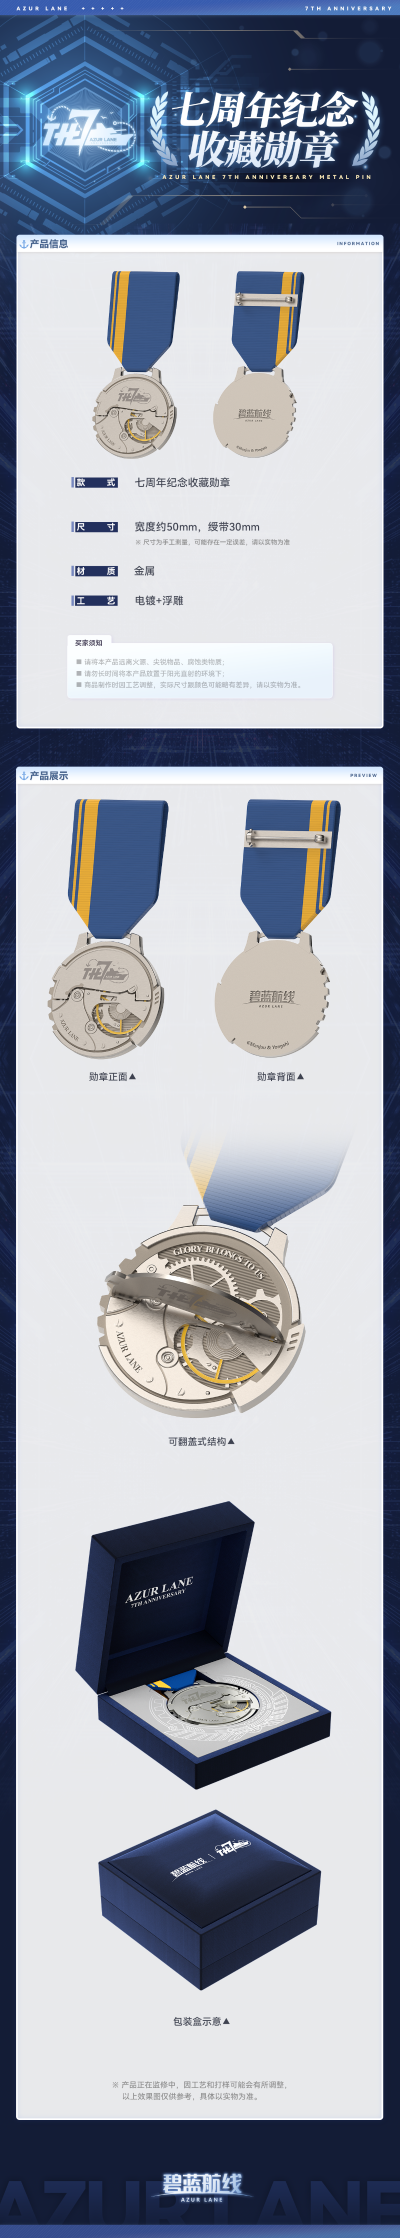 碧蓝航线 周年纪念 七周年纪念收藏勋章